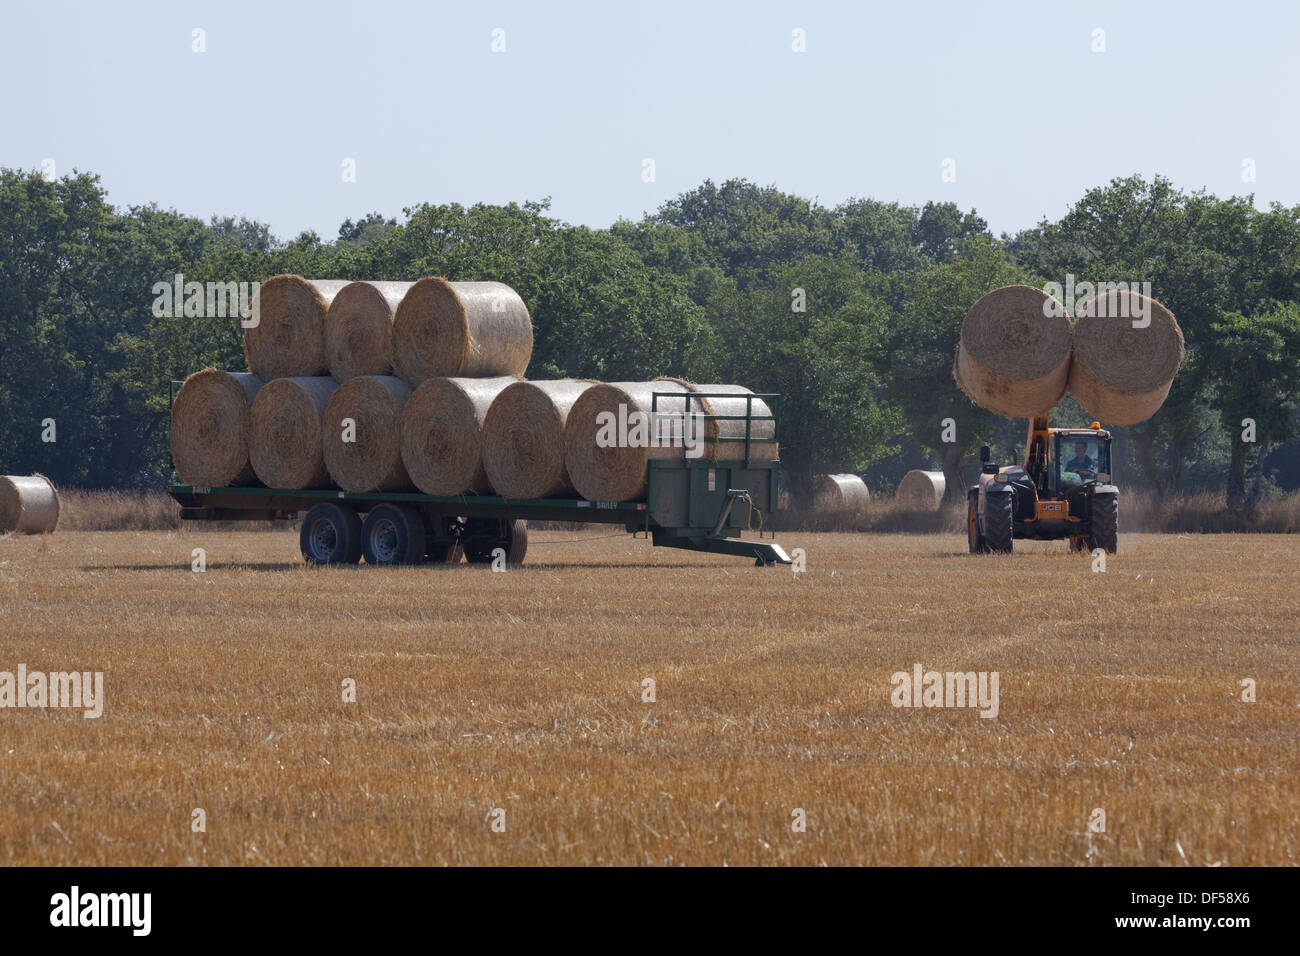 Ernte. Nach Combine Harvester geschnitten hat und aus Getreide gedroschen, eine sekundäre Lader Fahrzeug sammelt Ballen Stroh für die Entfernung. Stockfoto